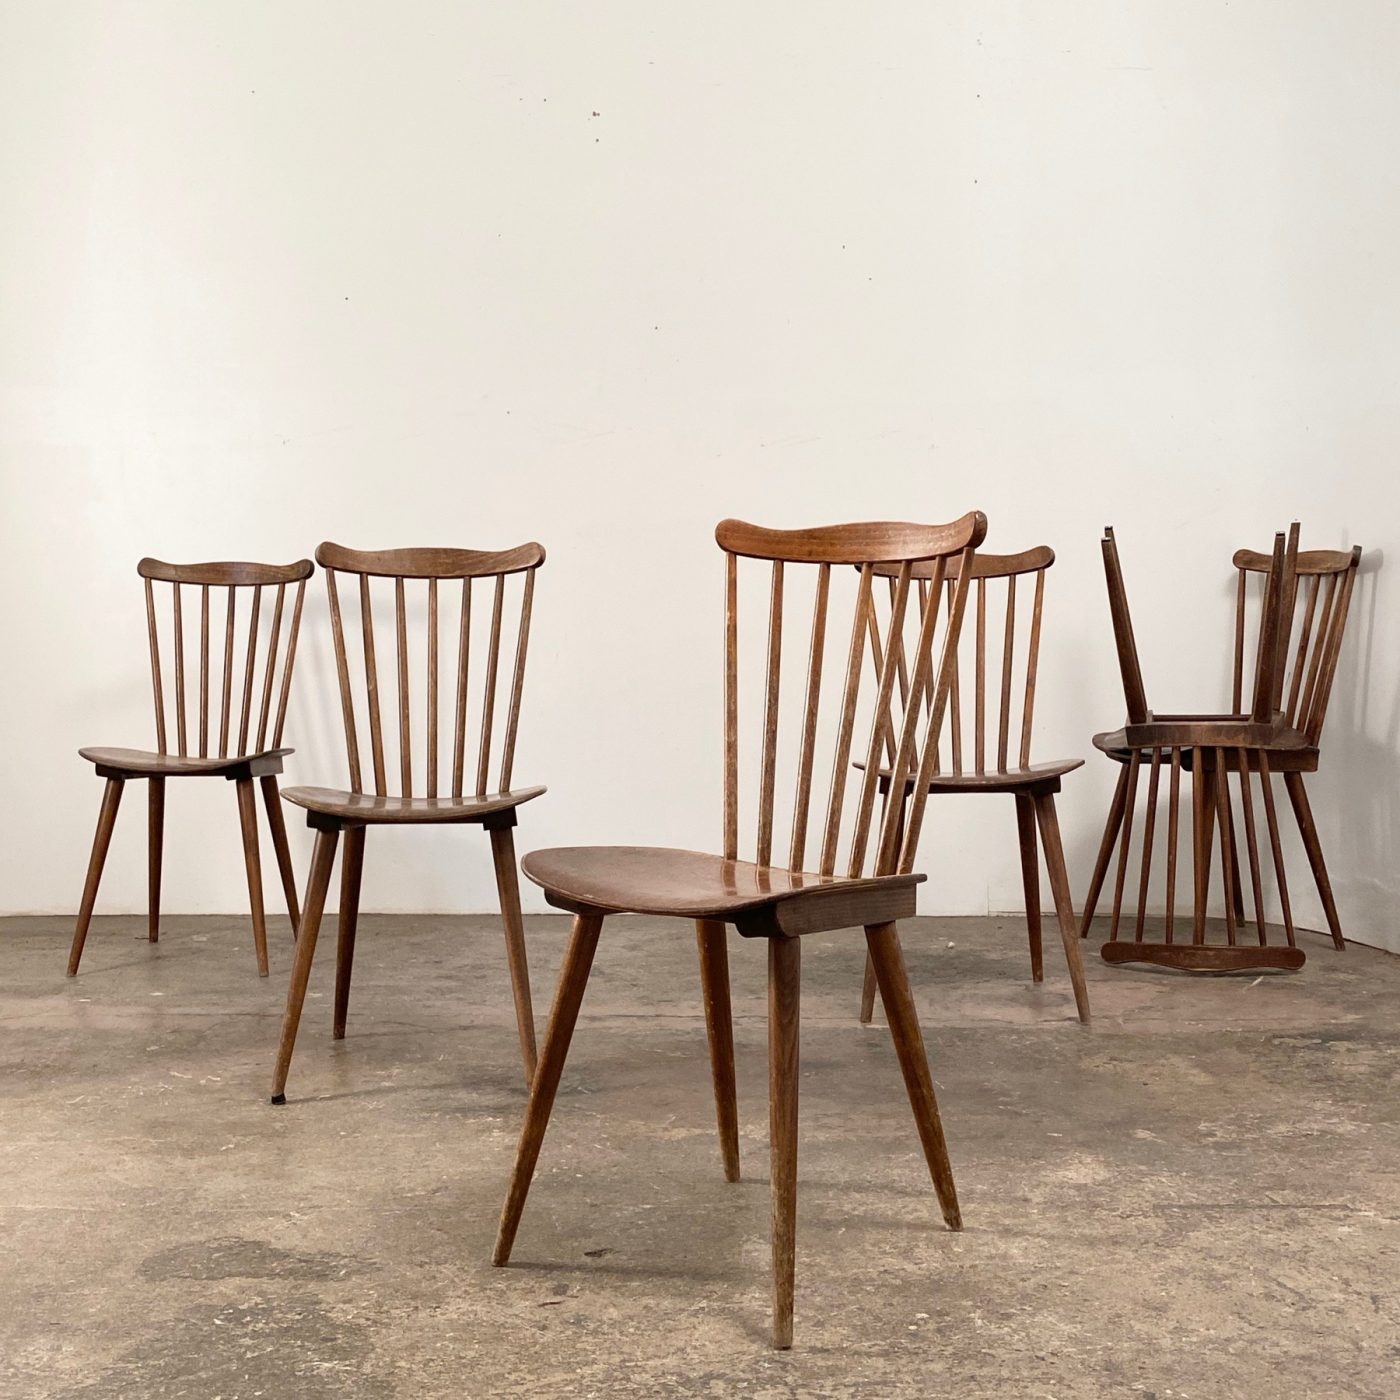 objet-vagabond-bistrot-chairs0001